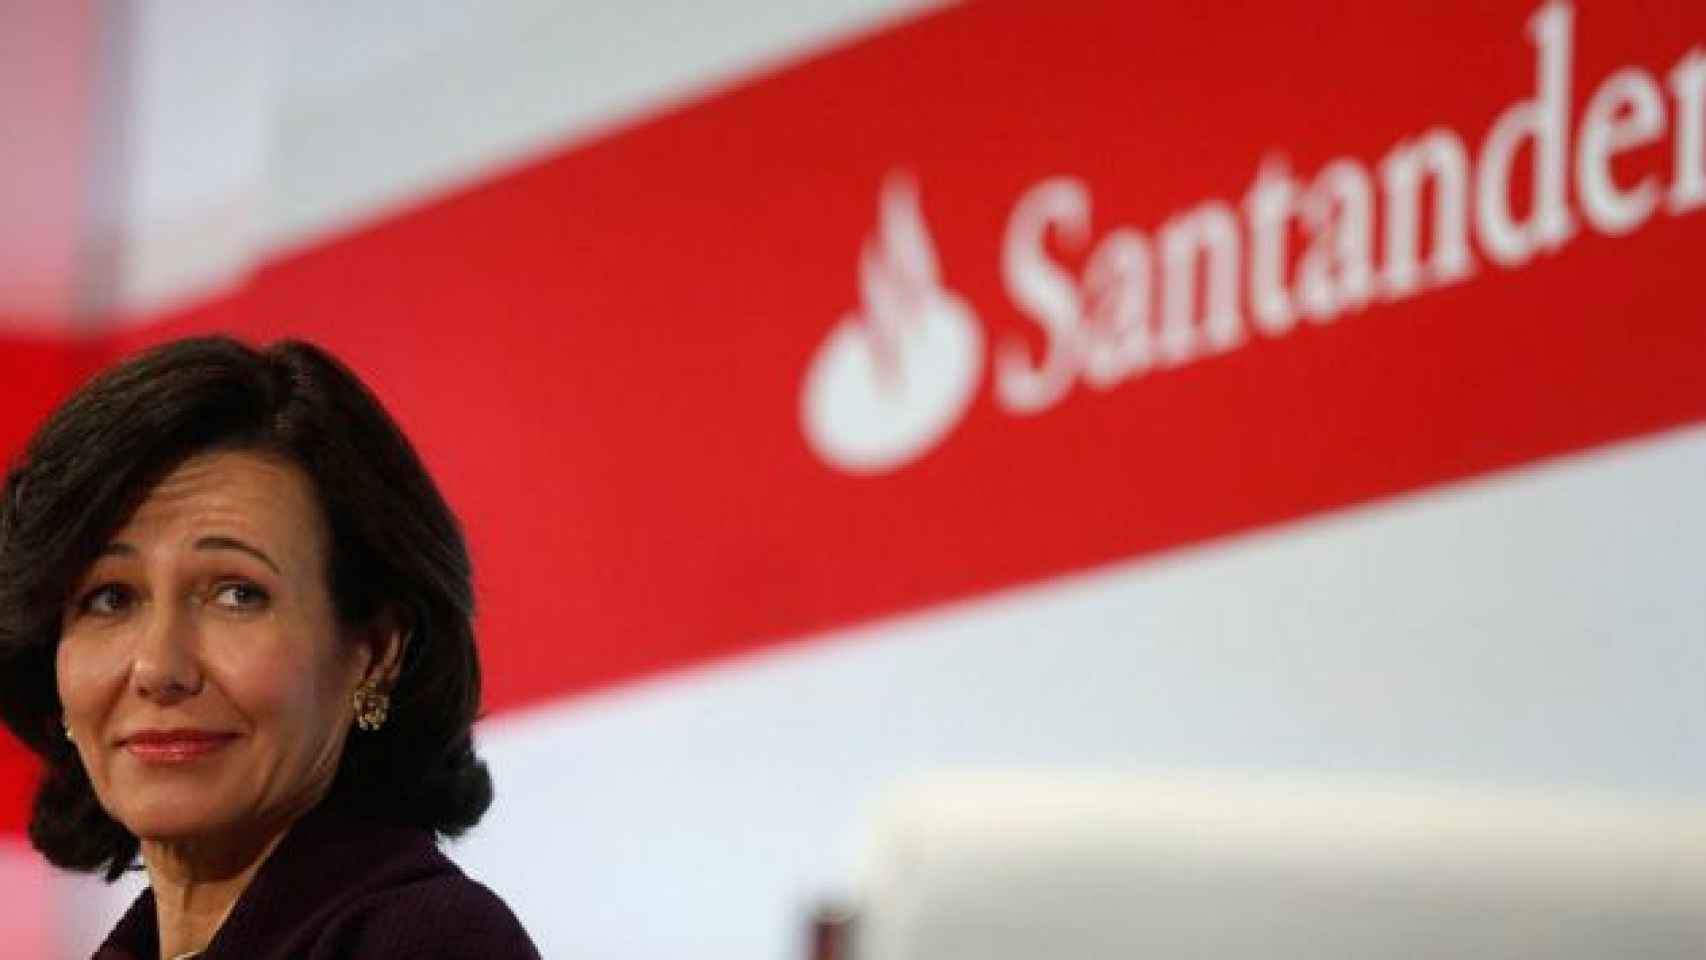 La presidenta del Banco Santander, Ana Botín, en una imagen de archivo / CG